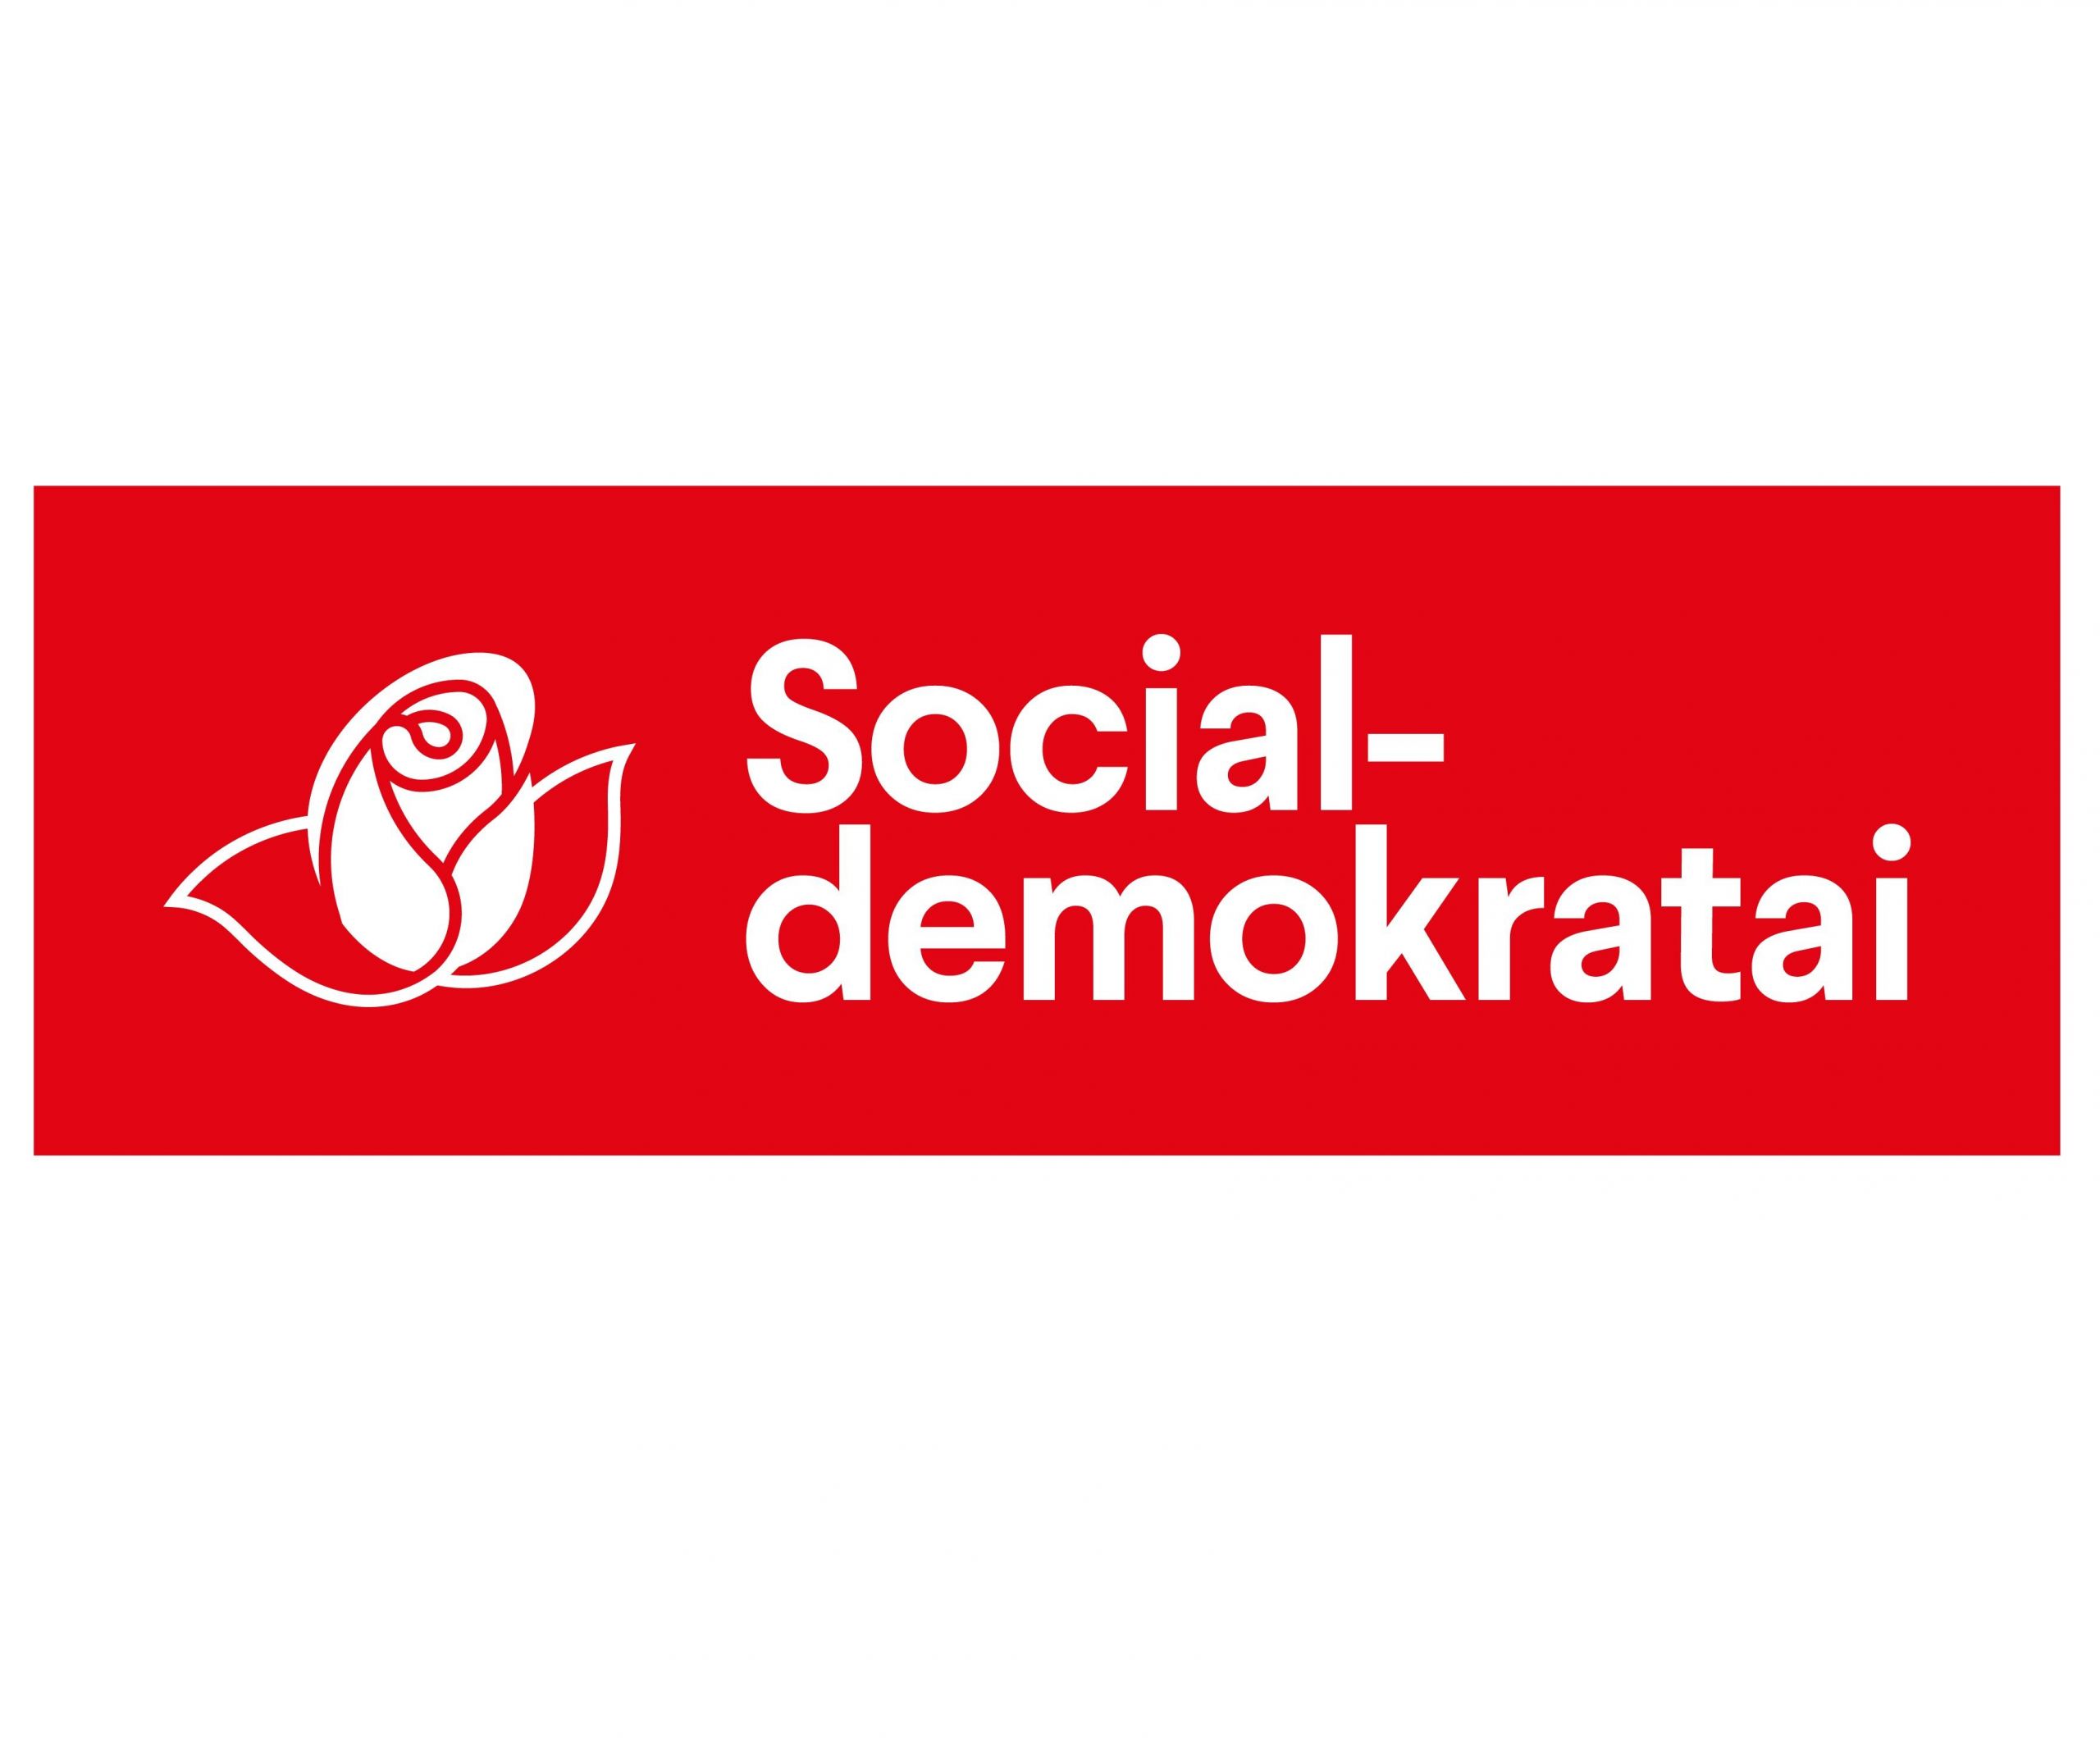 Socialdemokratams ir Lietuvoje